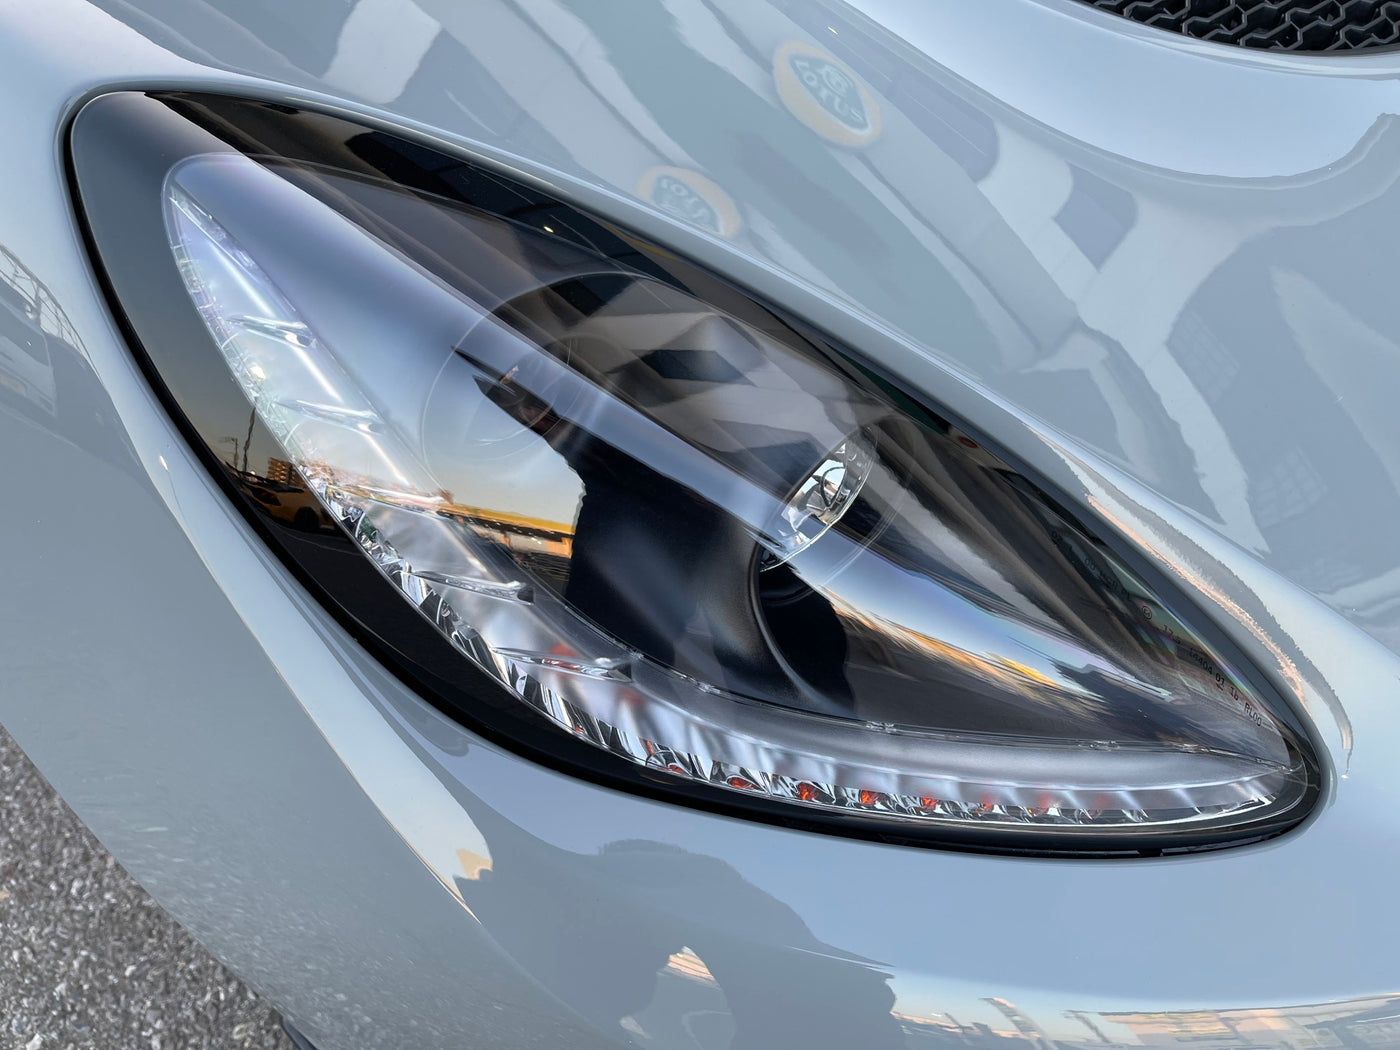 SOLD OUT 特選中古車 ロータス V6 エキシージ スポーツ390 Final Edition 2022年モデル ヴォルテックスグレー 走行594㎞